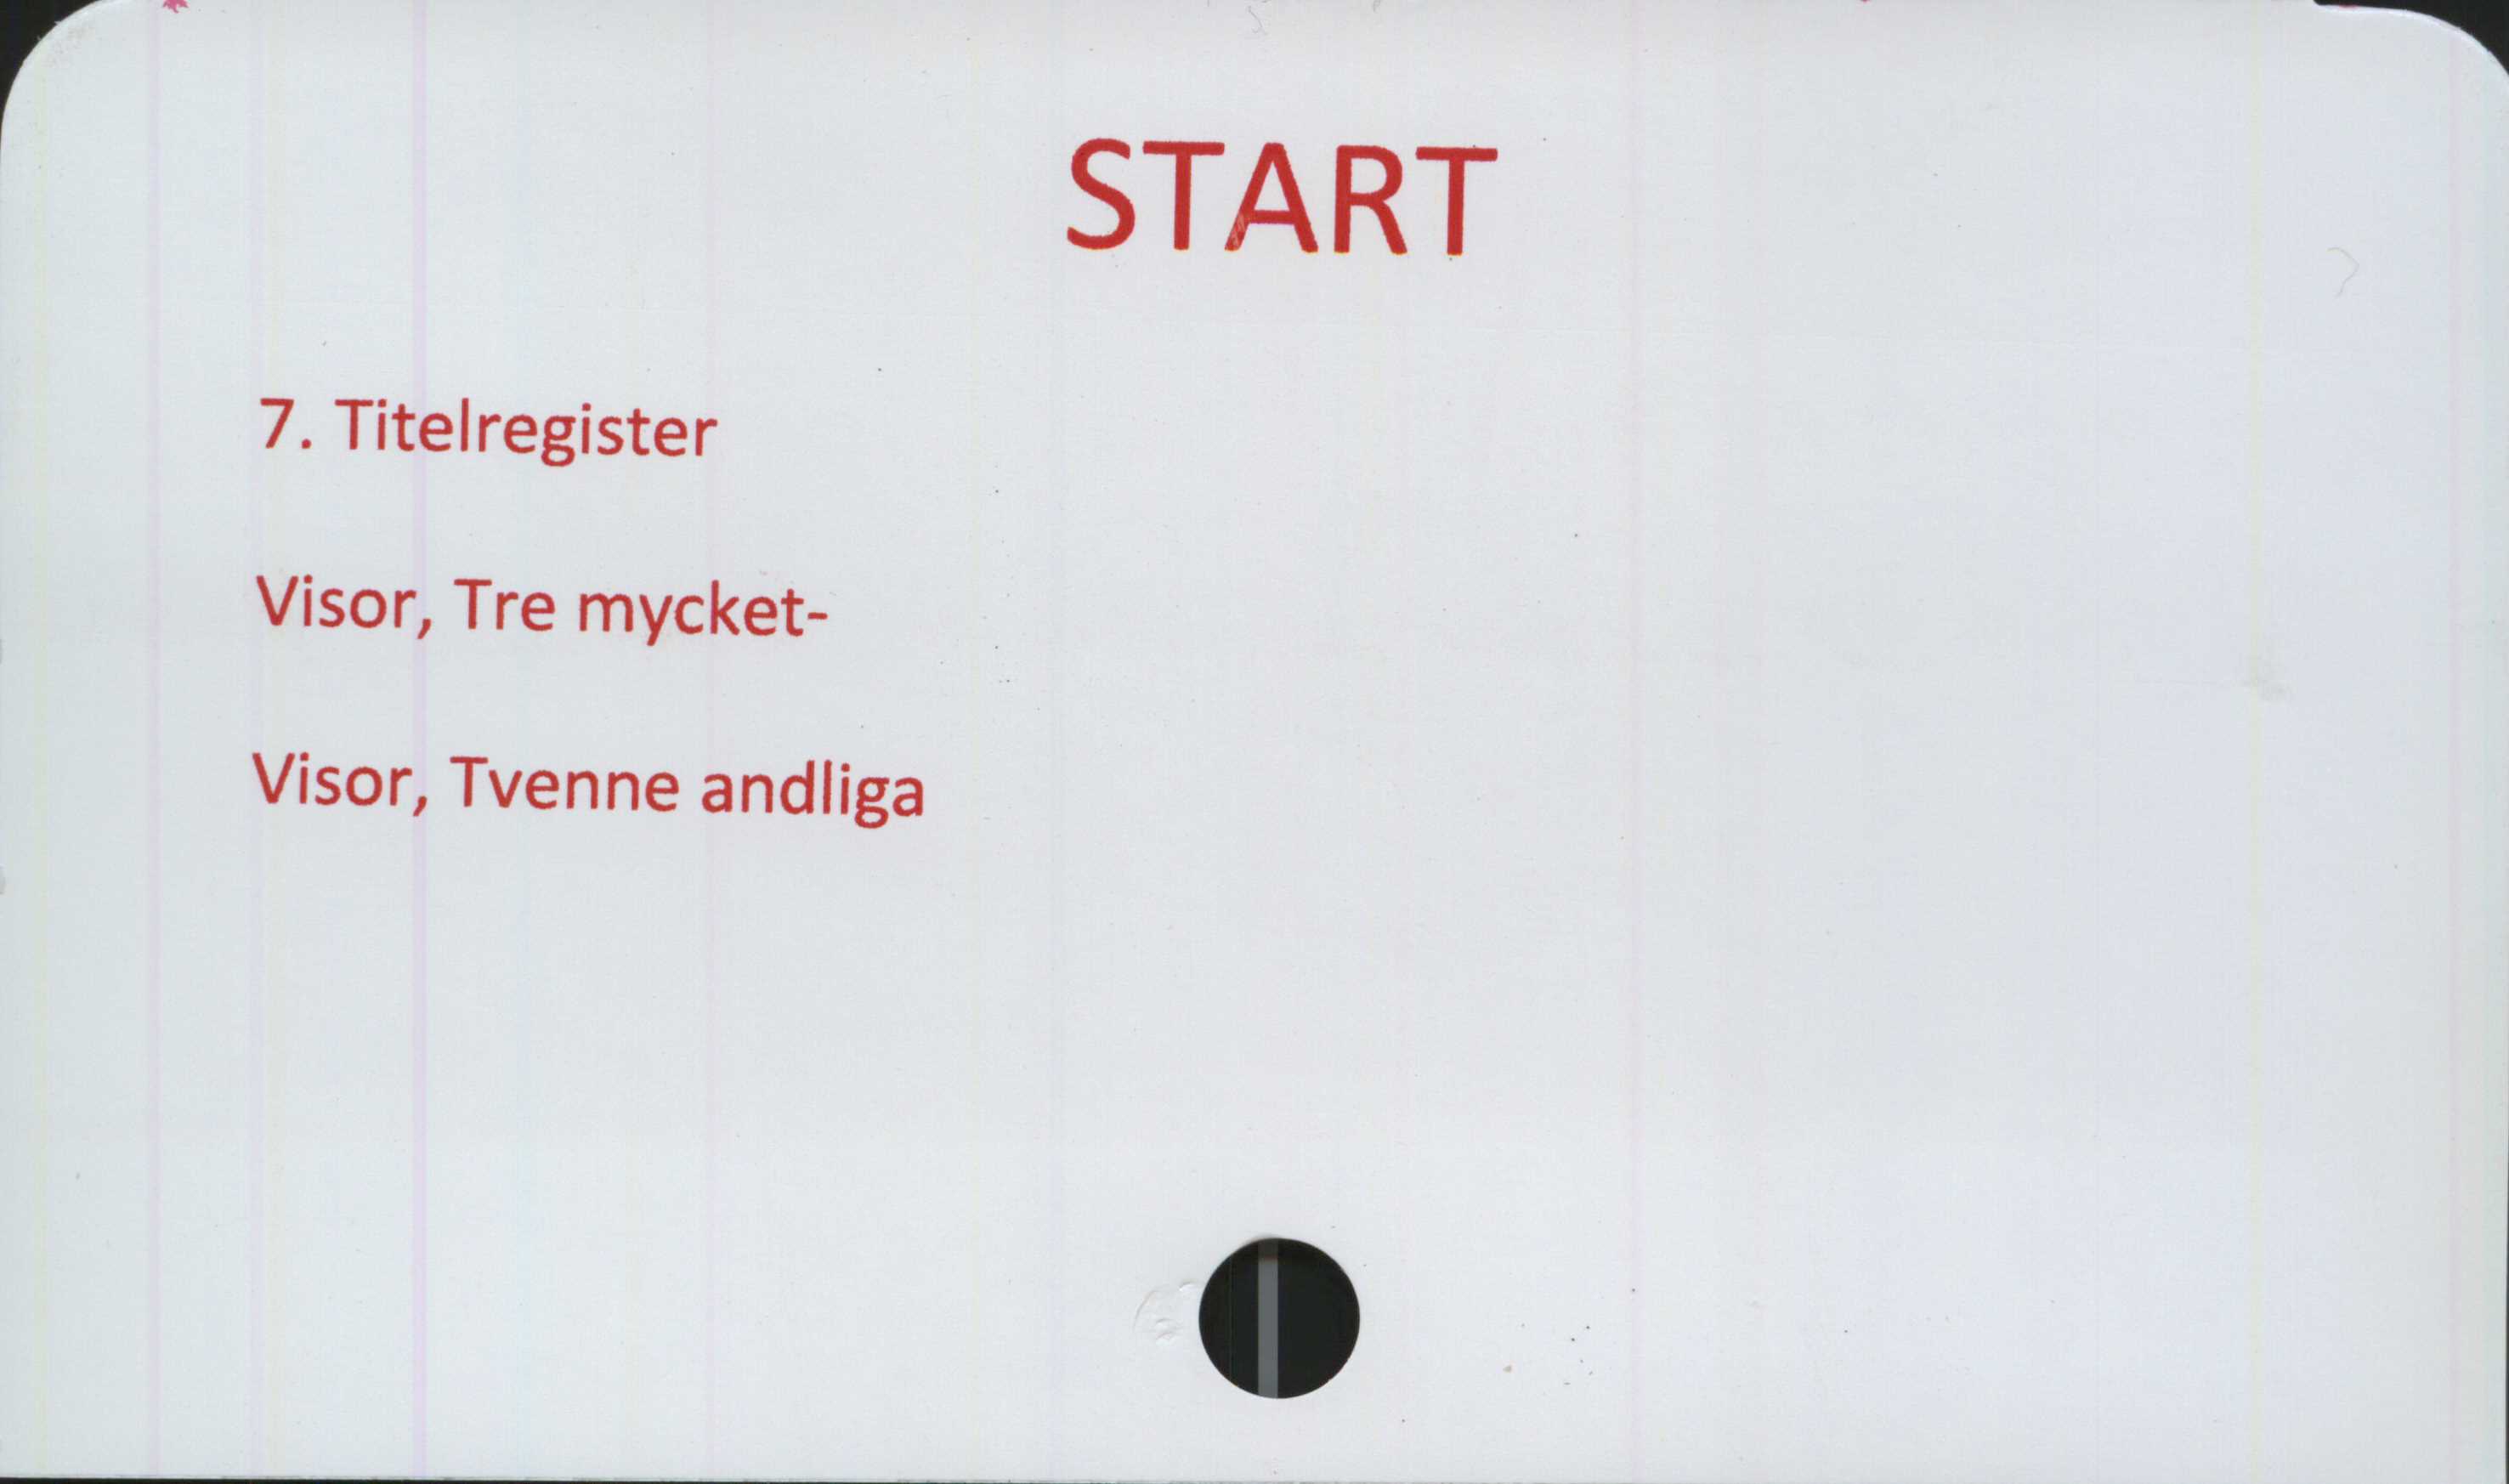 ﻿START ﻿START

7. Titelregister
Visor, Tre mycket-
Visor, Tvenne andliga